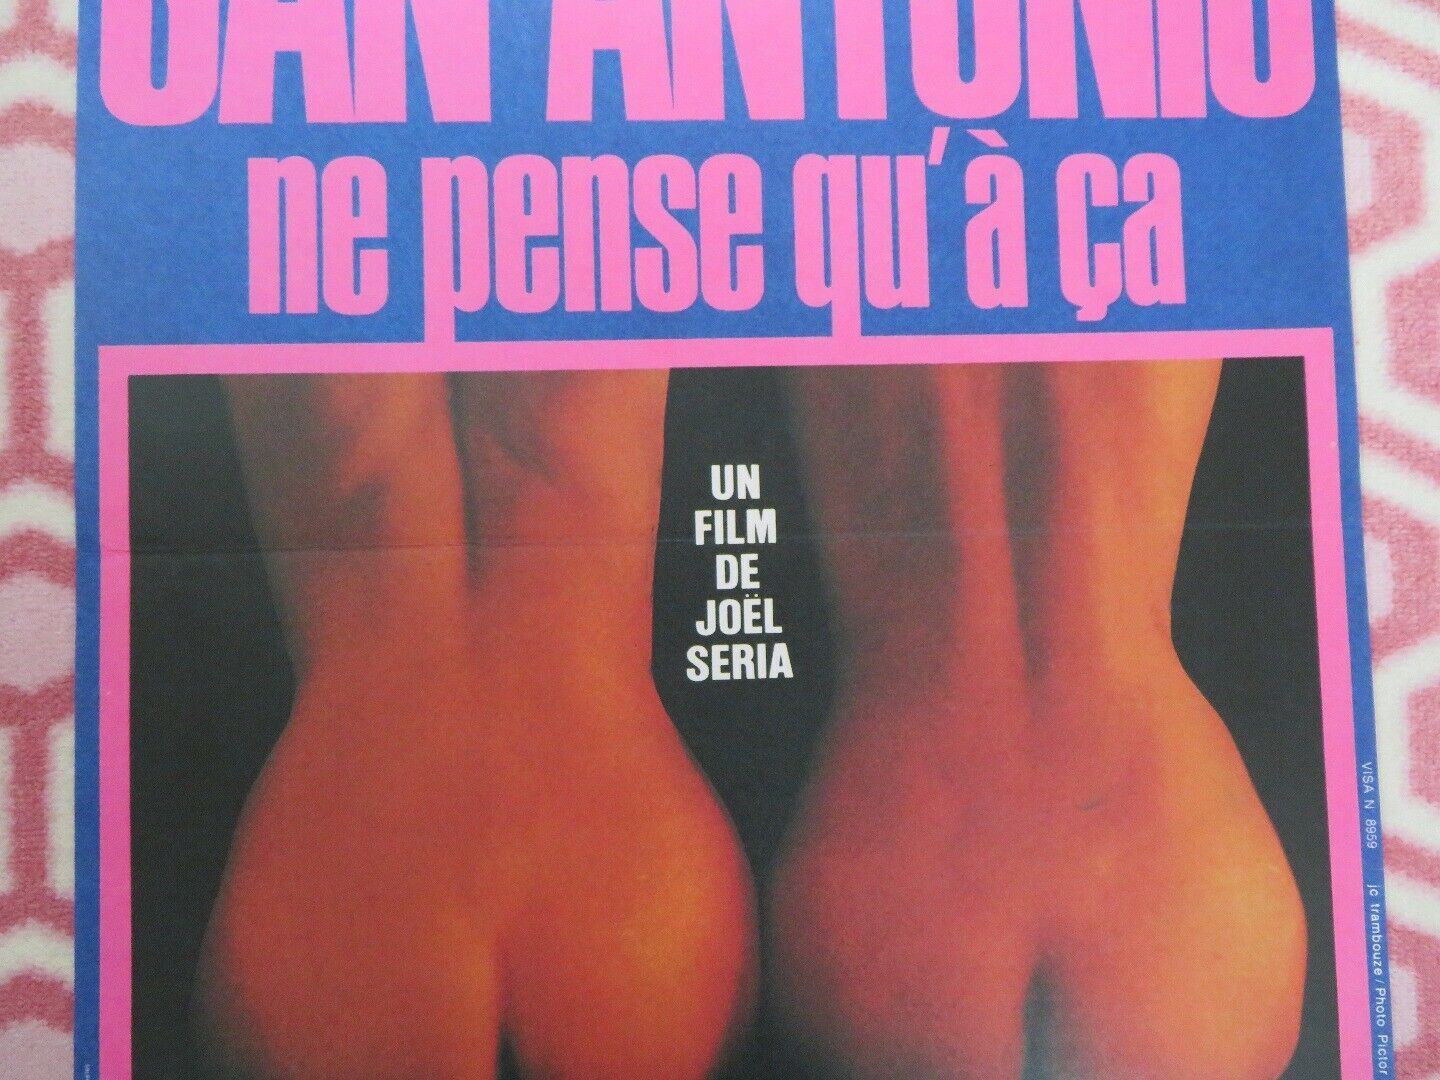 SAN-ANTONIO NE PENSE QU A CA BELGIUM (23"x 15.5") POSTER PHILIPPE GASTE 1981